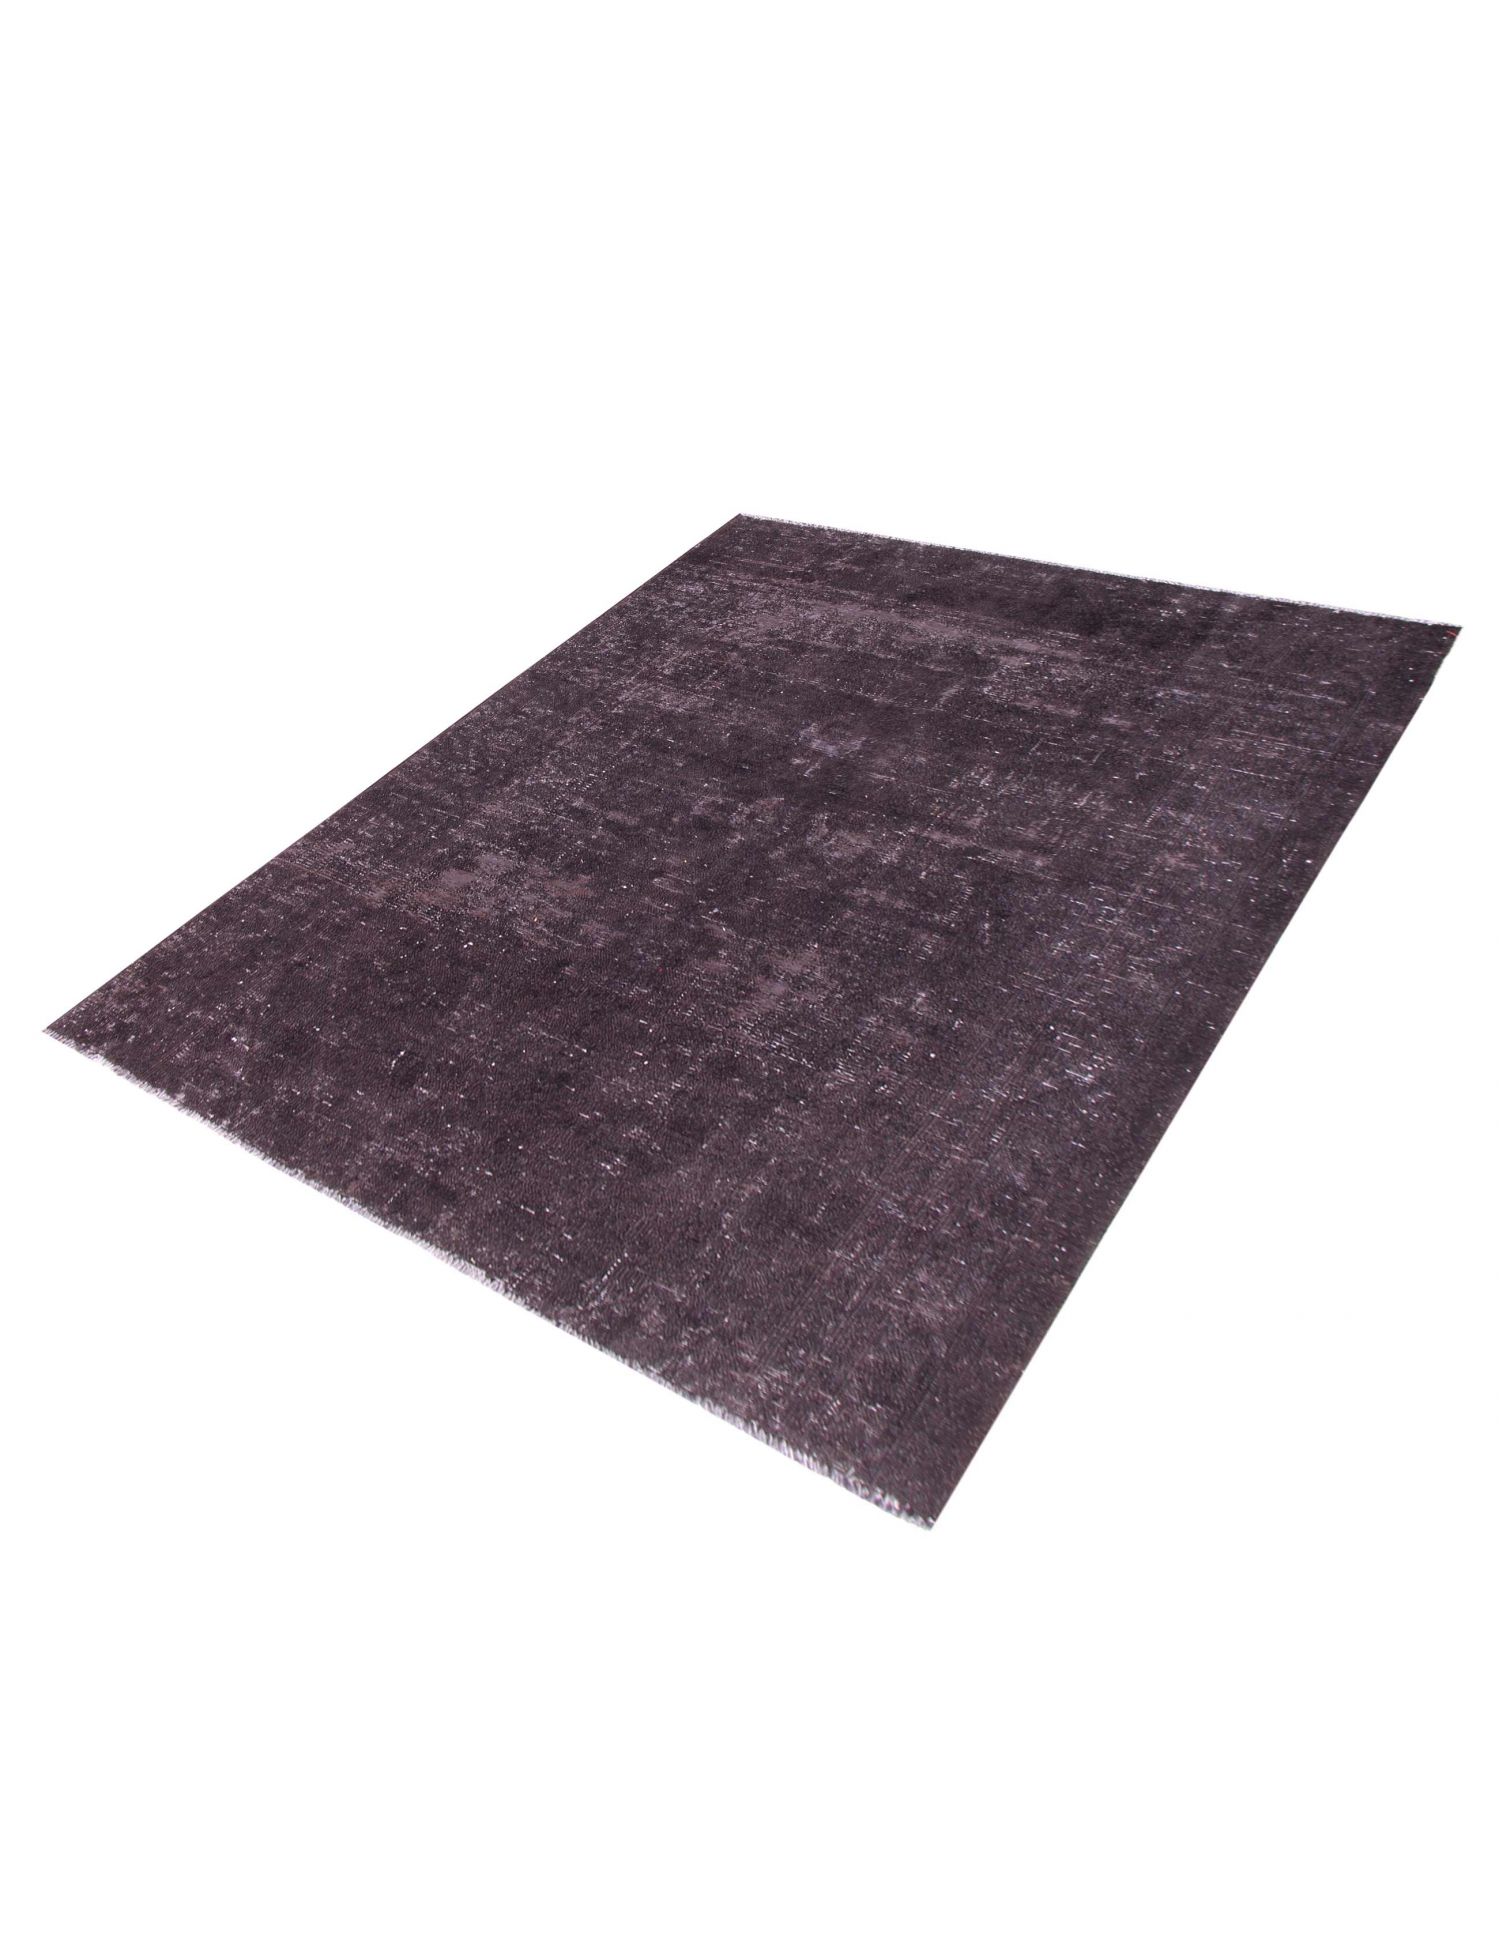 Persian Vintage Carpet  black <br/>253 x 190 cm